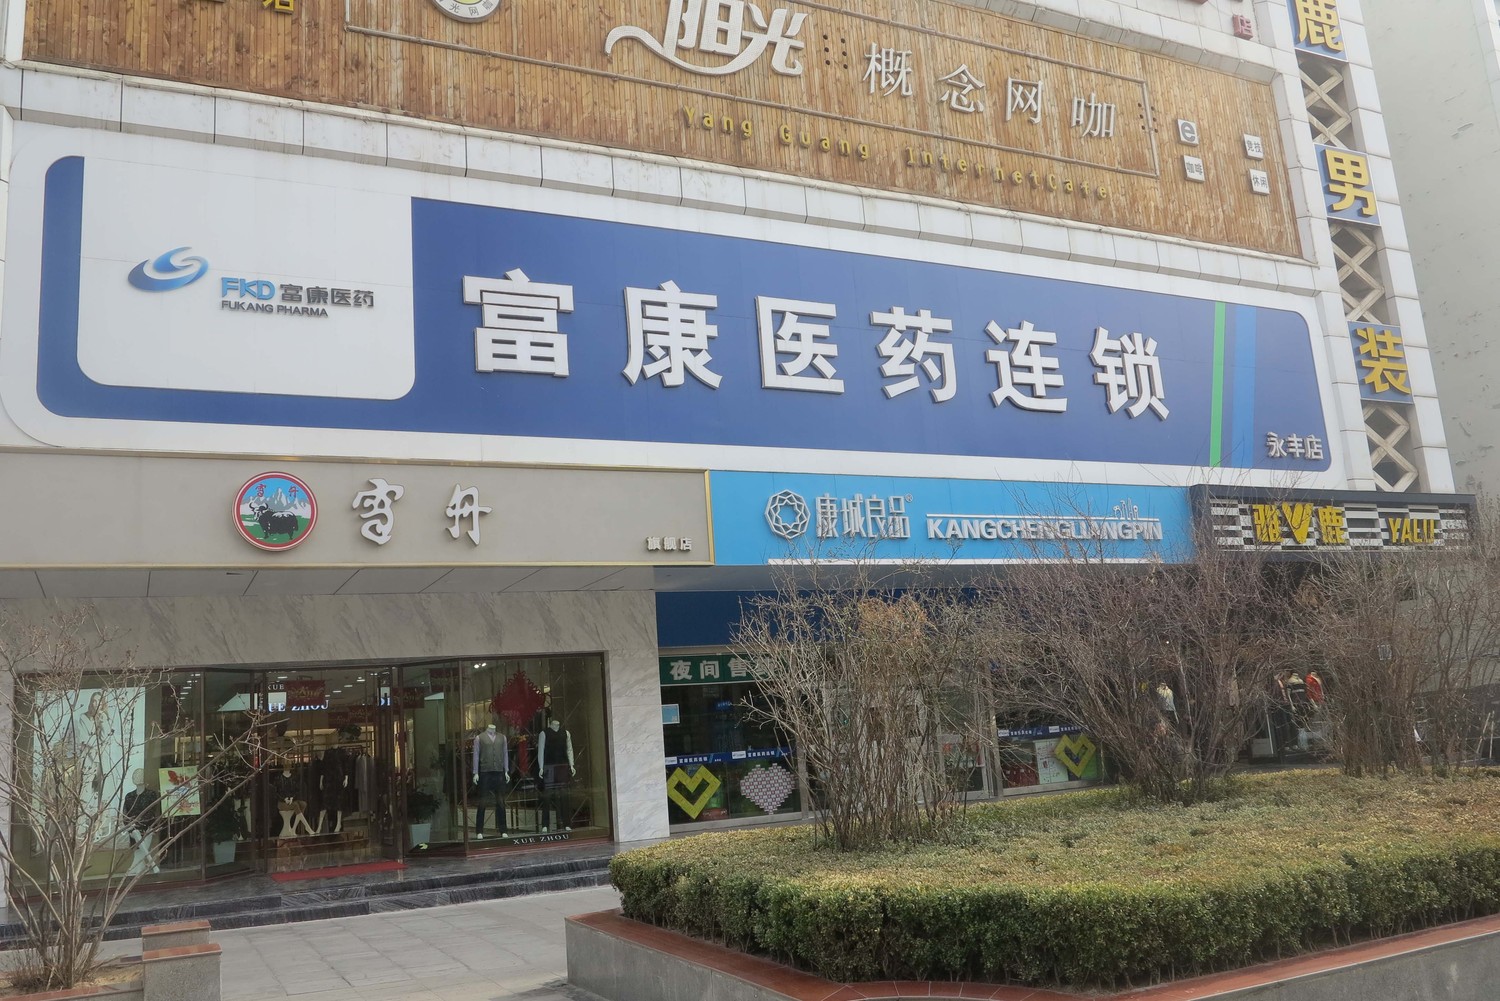 青海省富康醫藥連鎖有限公司靈豐店一層至負一層新增扶梯結構改造加固工程.jpg